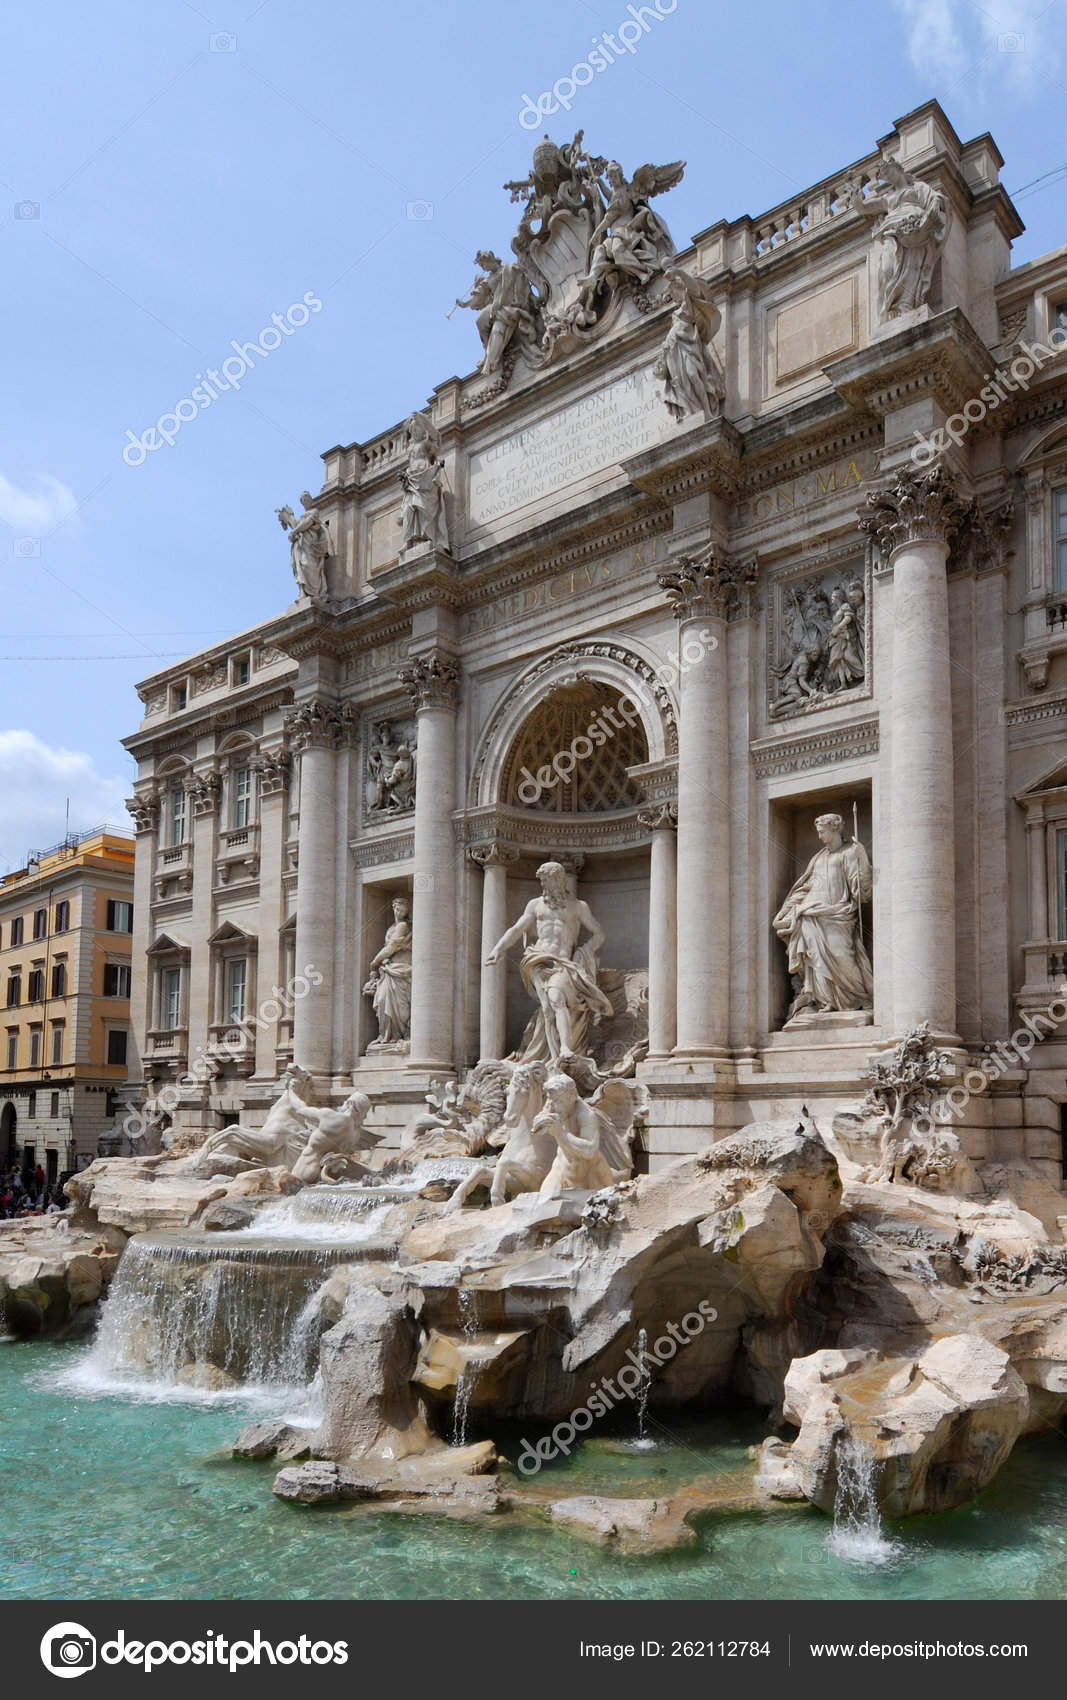 トレビの泉 ニコラ サルビスは ローマ最大の噴水のための劇場デザインを驚かせます 1762年に完成しました ストックエディトリアル用写真 C Yayimages